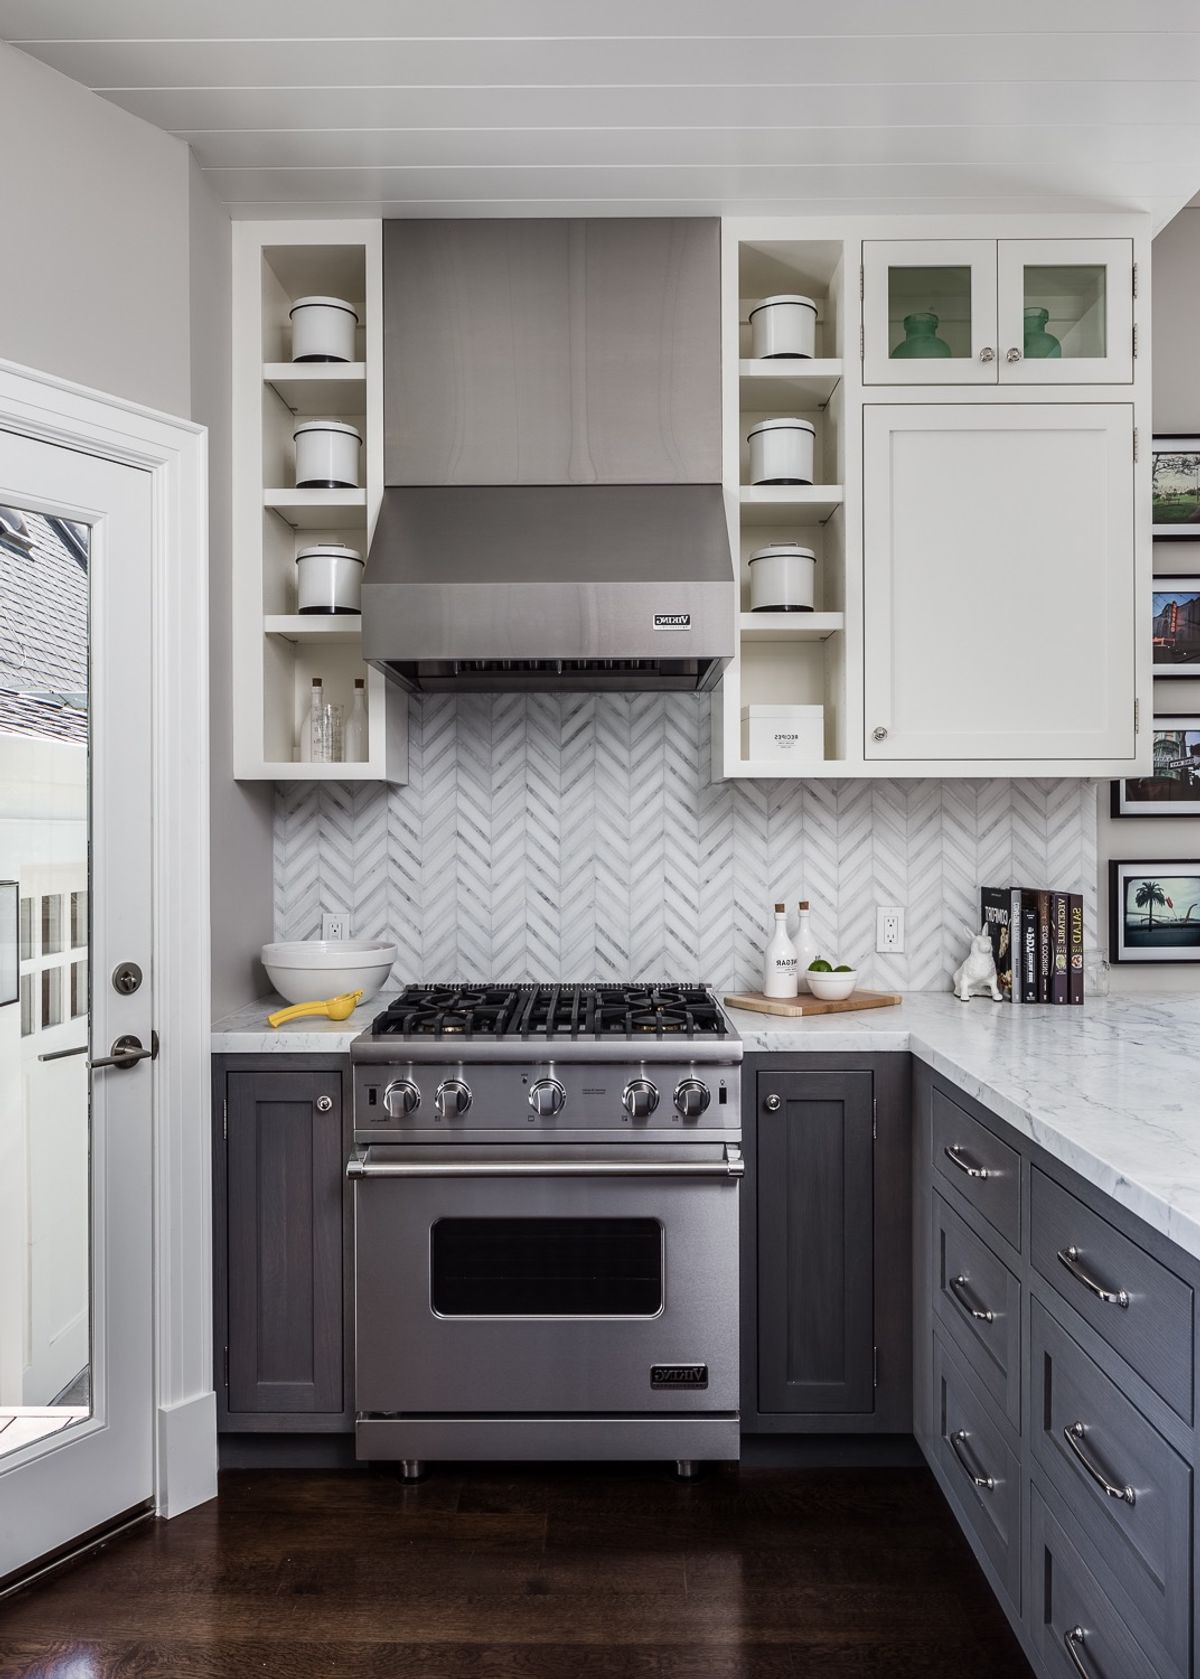 Small-Space Kitchen Interior Decor Tips